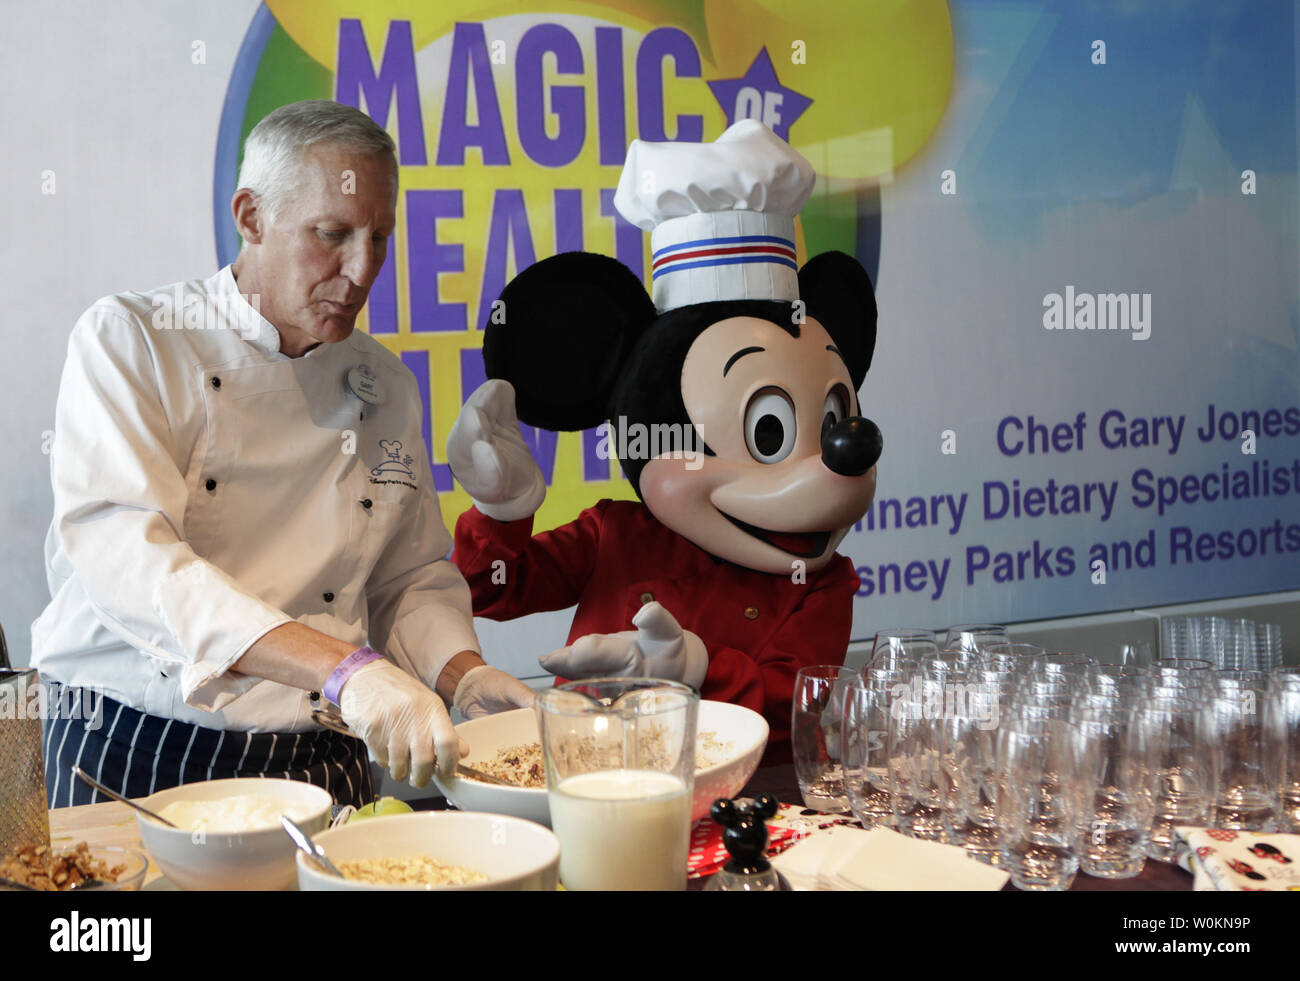 Le chef Gary Jones et le personnage de Walt Disney Mickey Mouse préparer une alimentation saine avant l'annonce de l'entreprise avancement important des lignes directrices sur la nutrition policy à Washington le 5 juin 2012. UPI/Yuri Gripas Banque D'Images